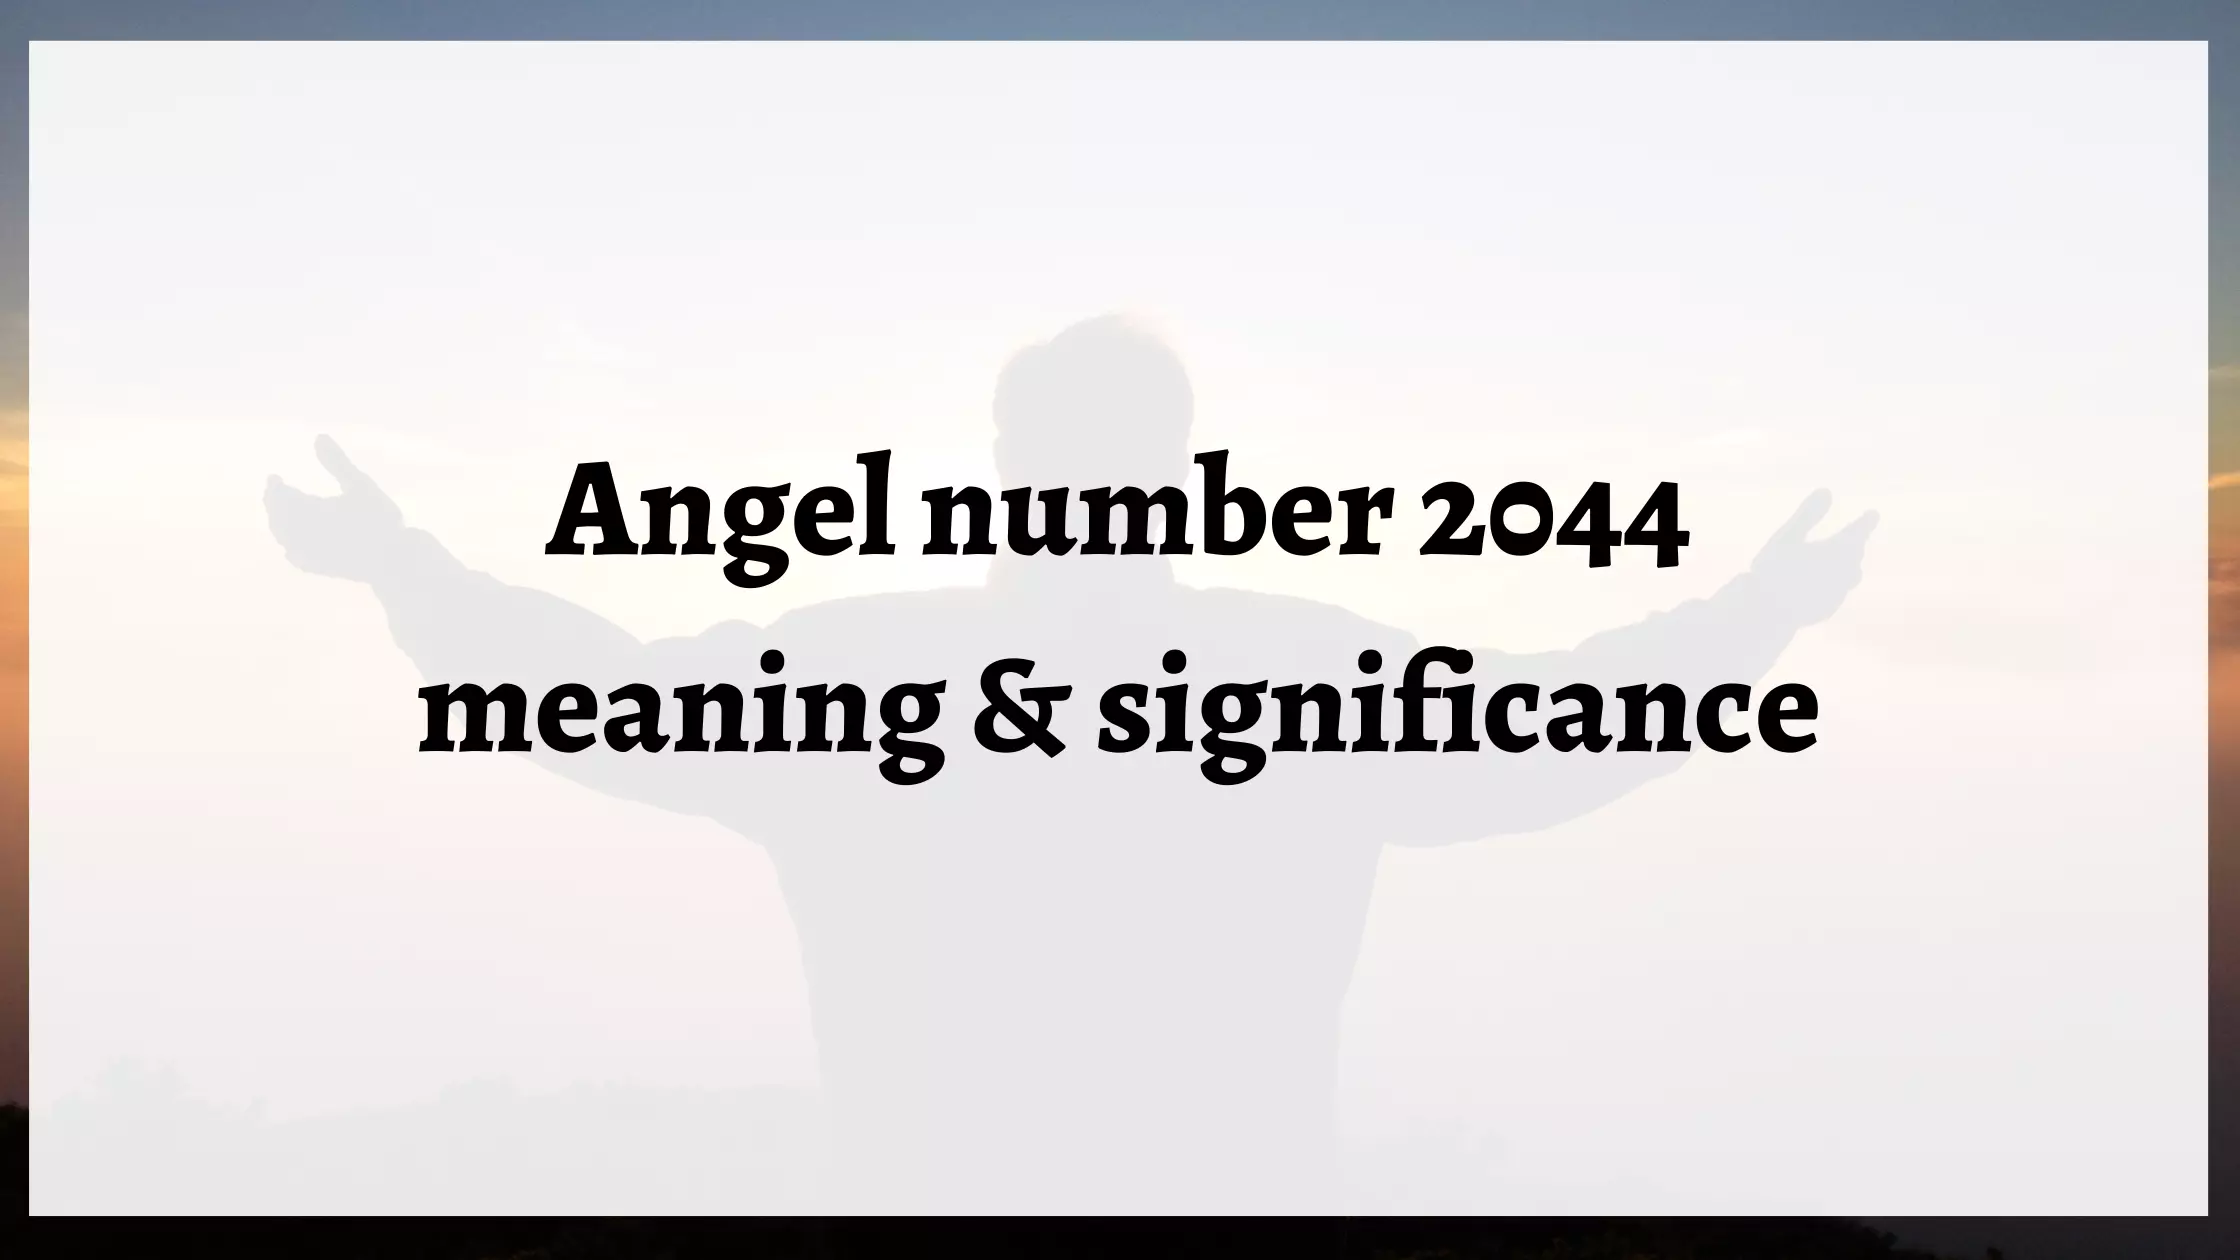 2044 angel number